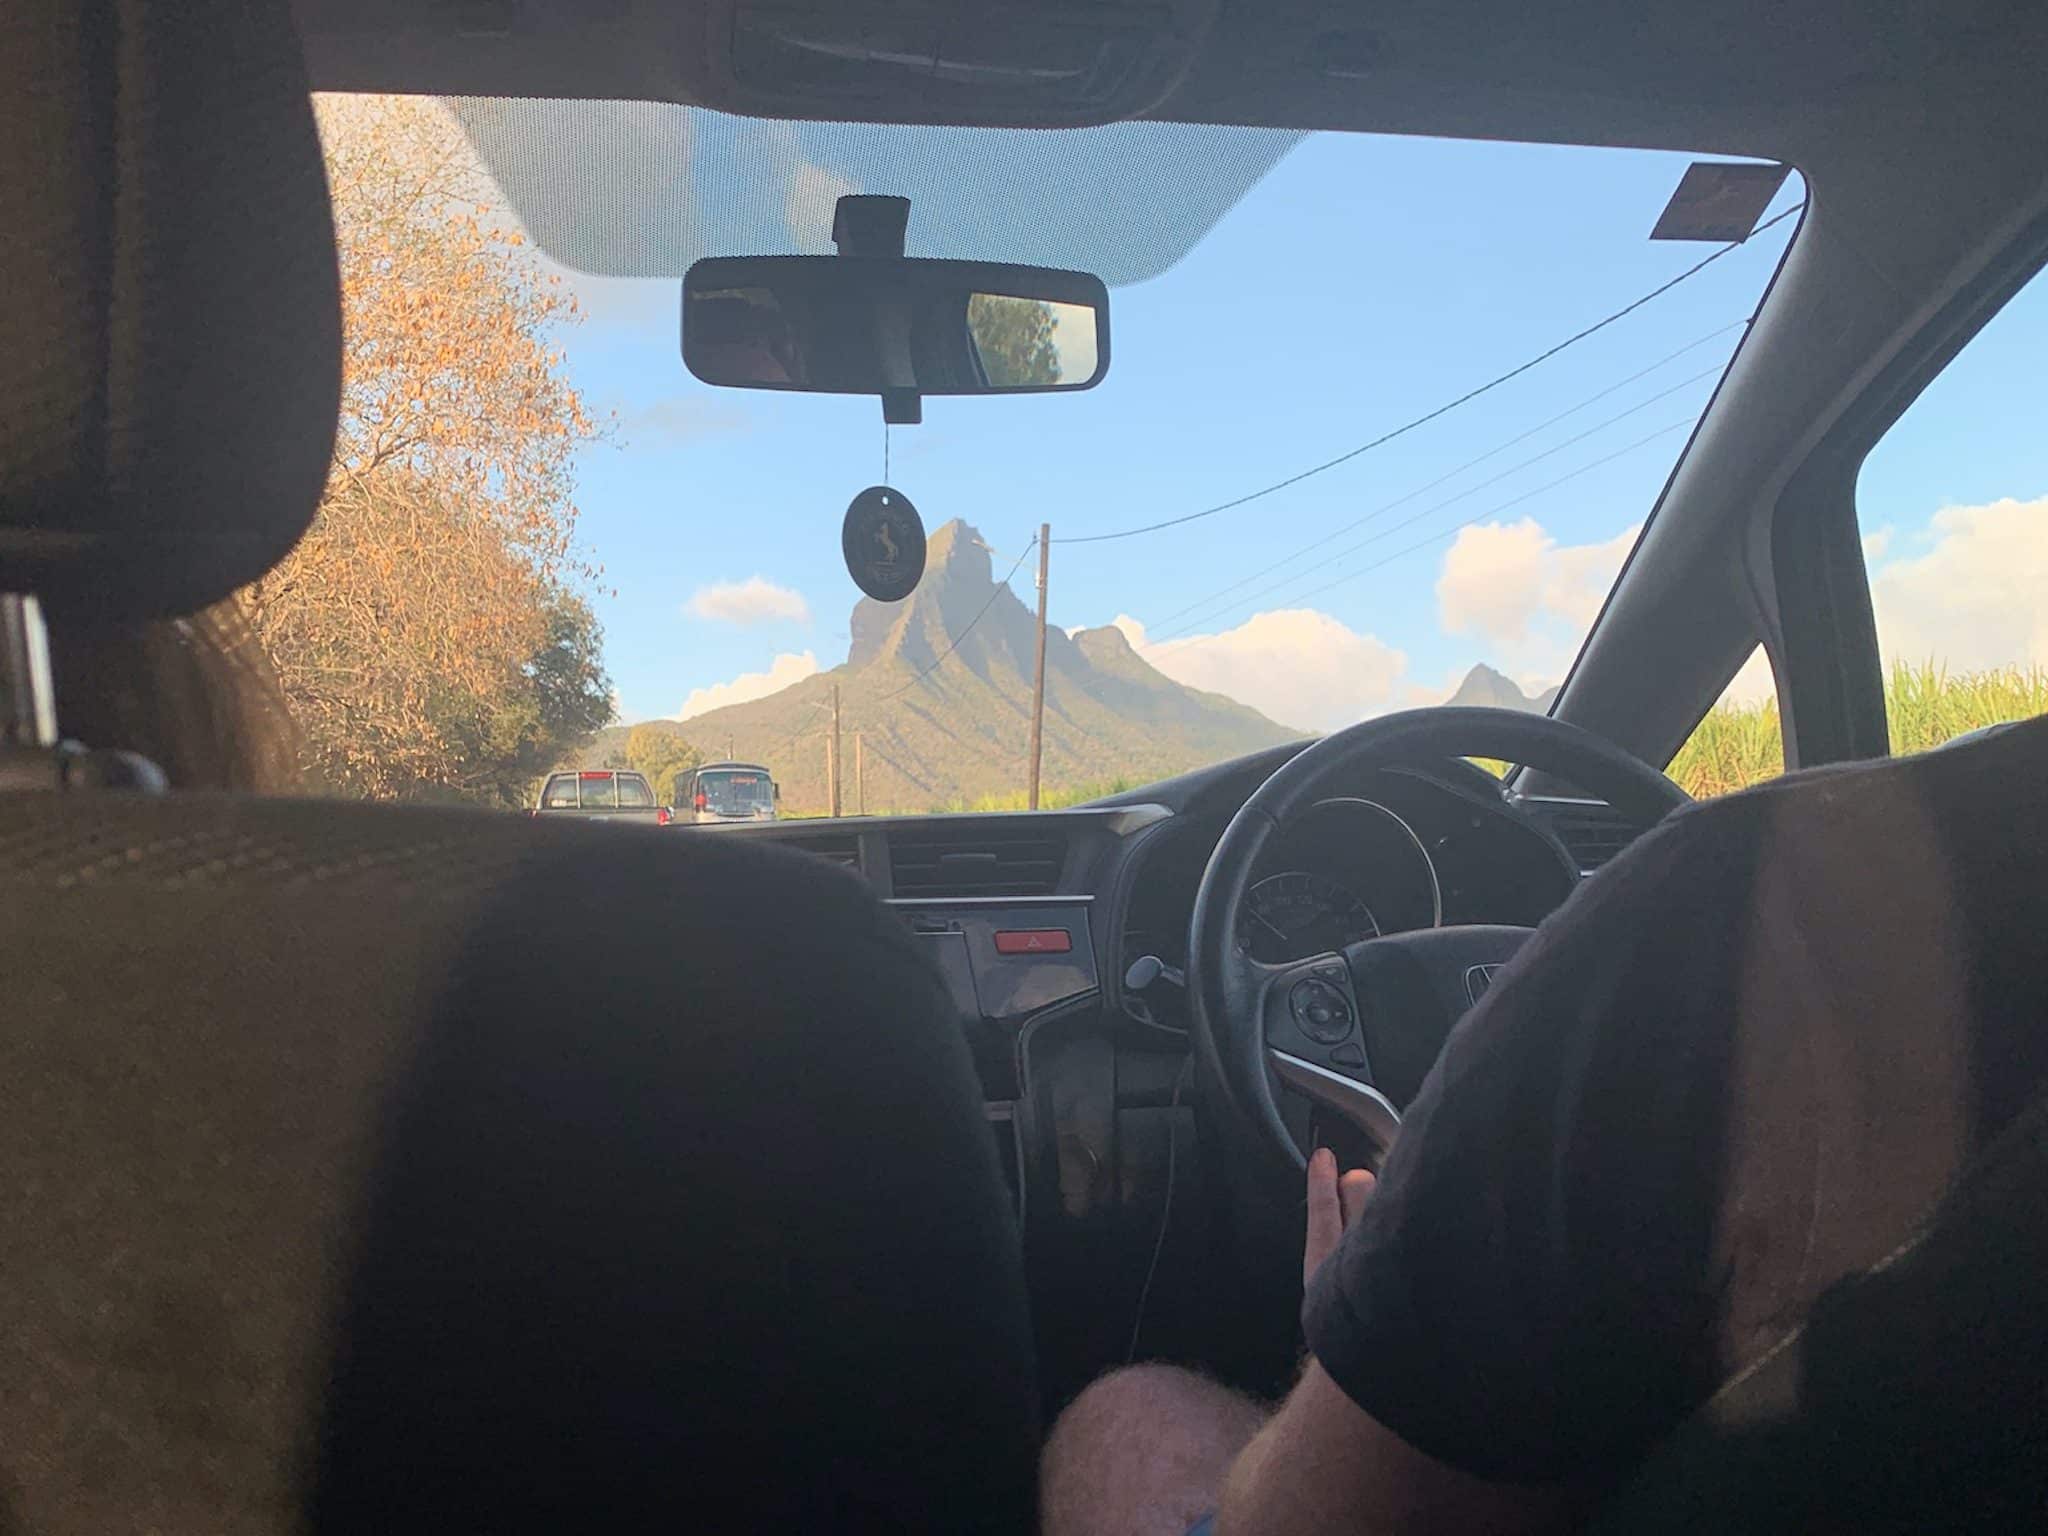 Auf Mauritius ist Linksverkehr – der Fahrer sitzt im Auto rechts.